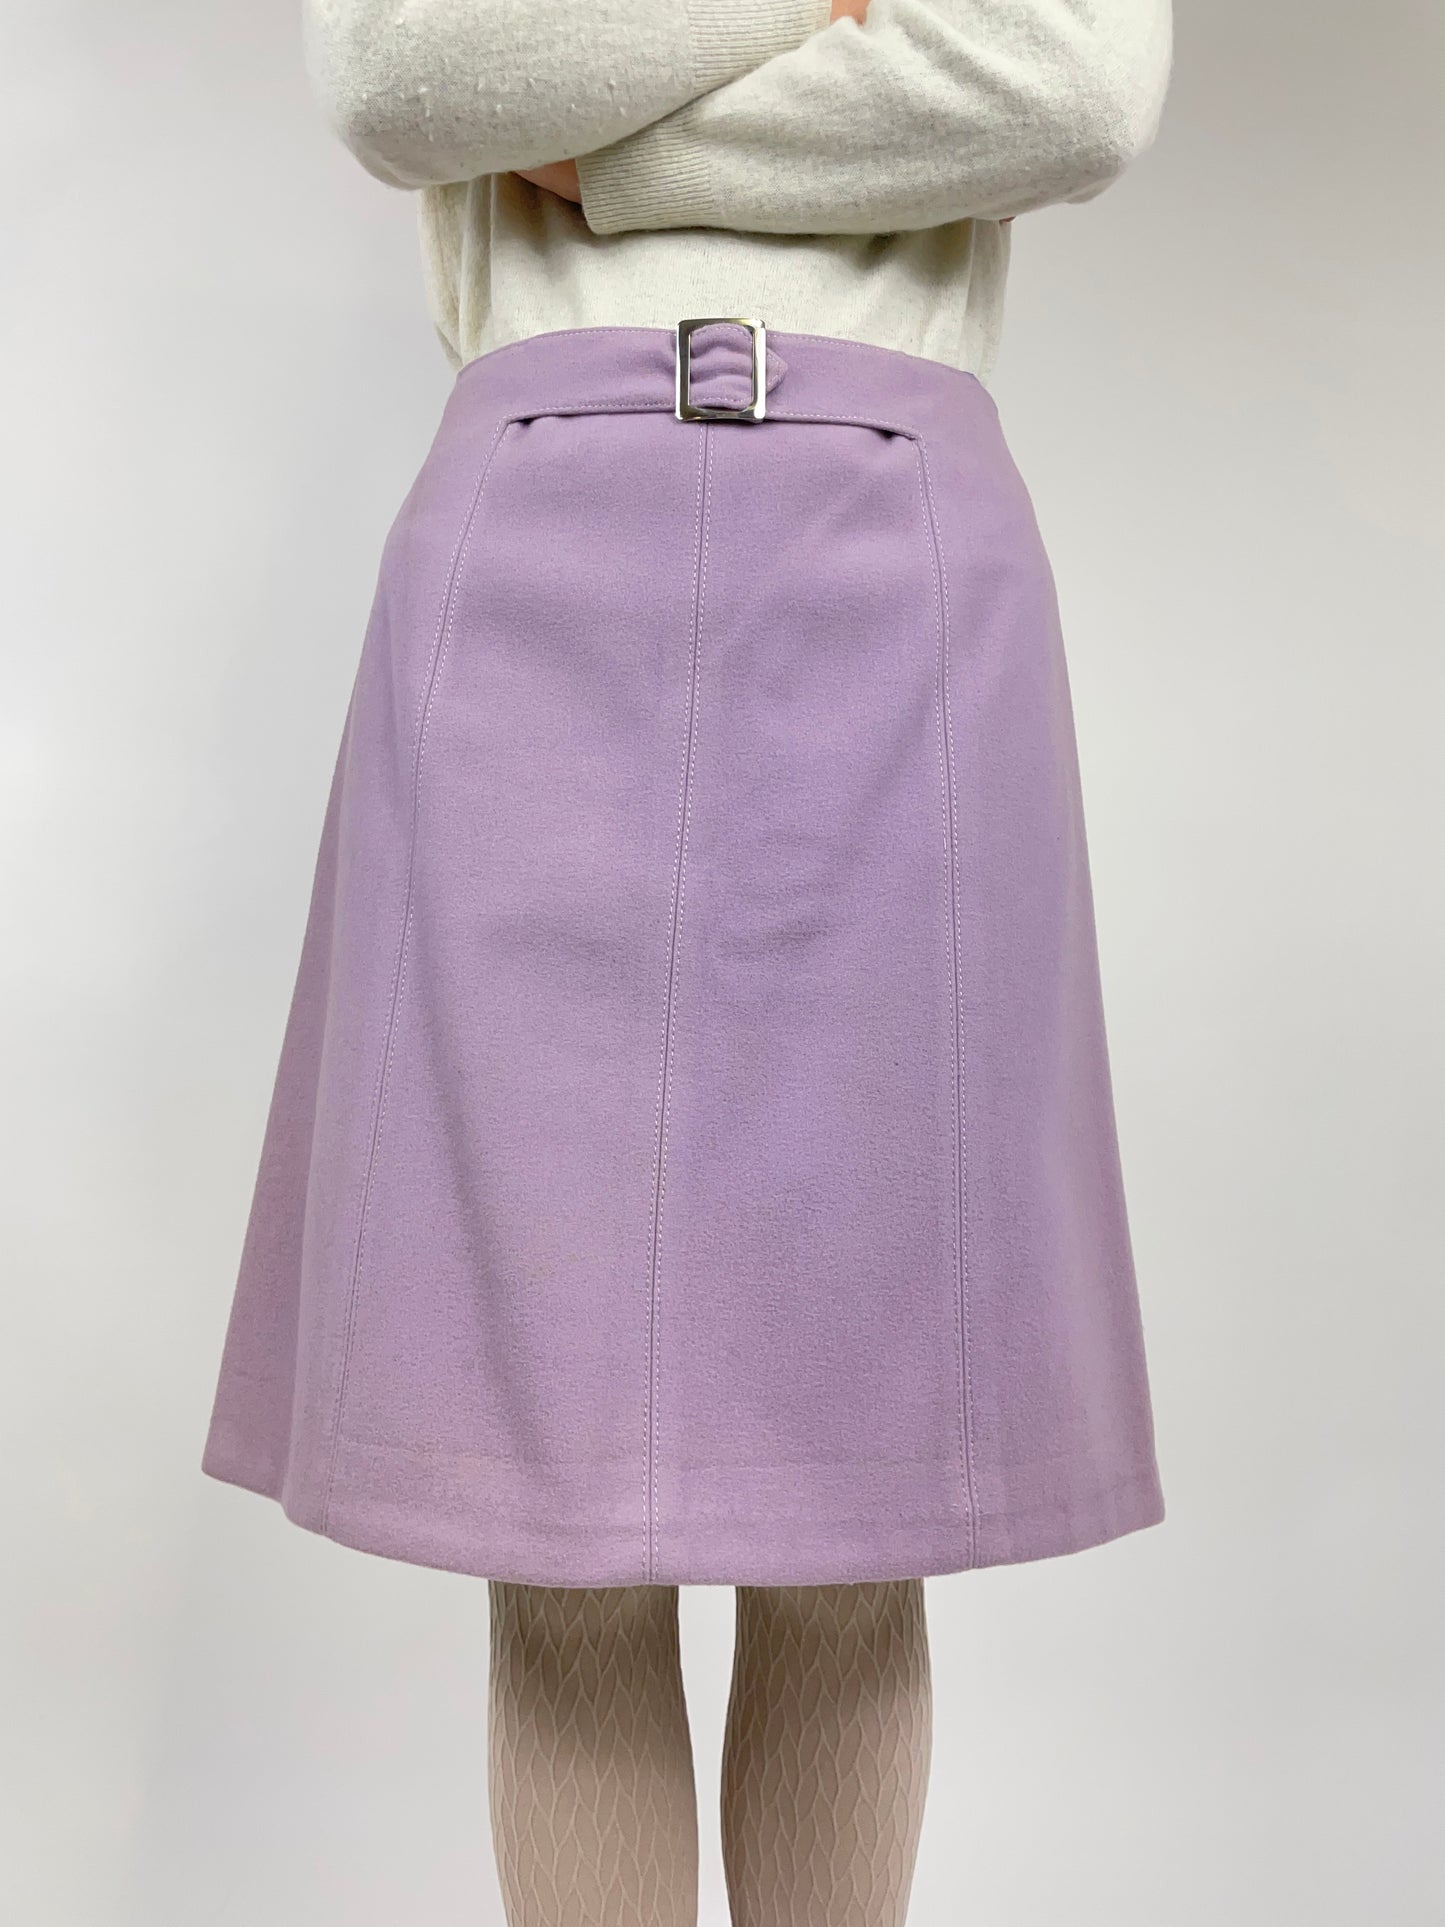 1990s skirt